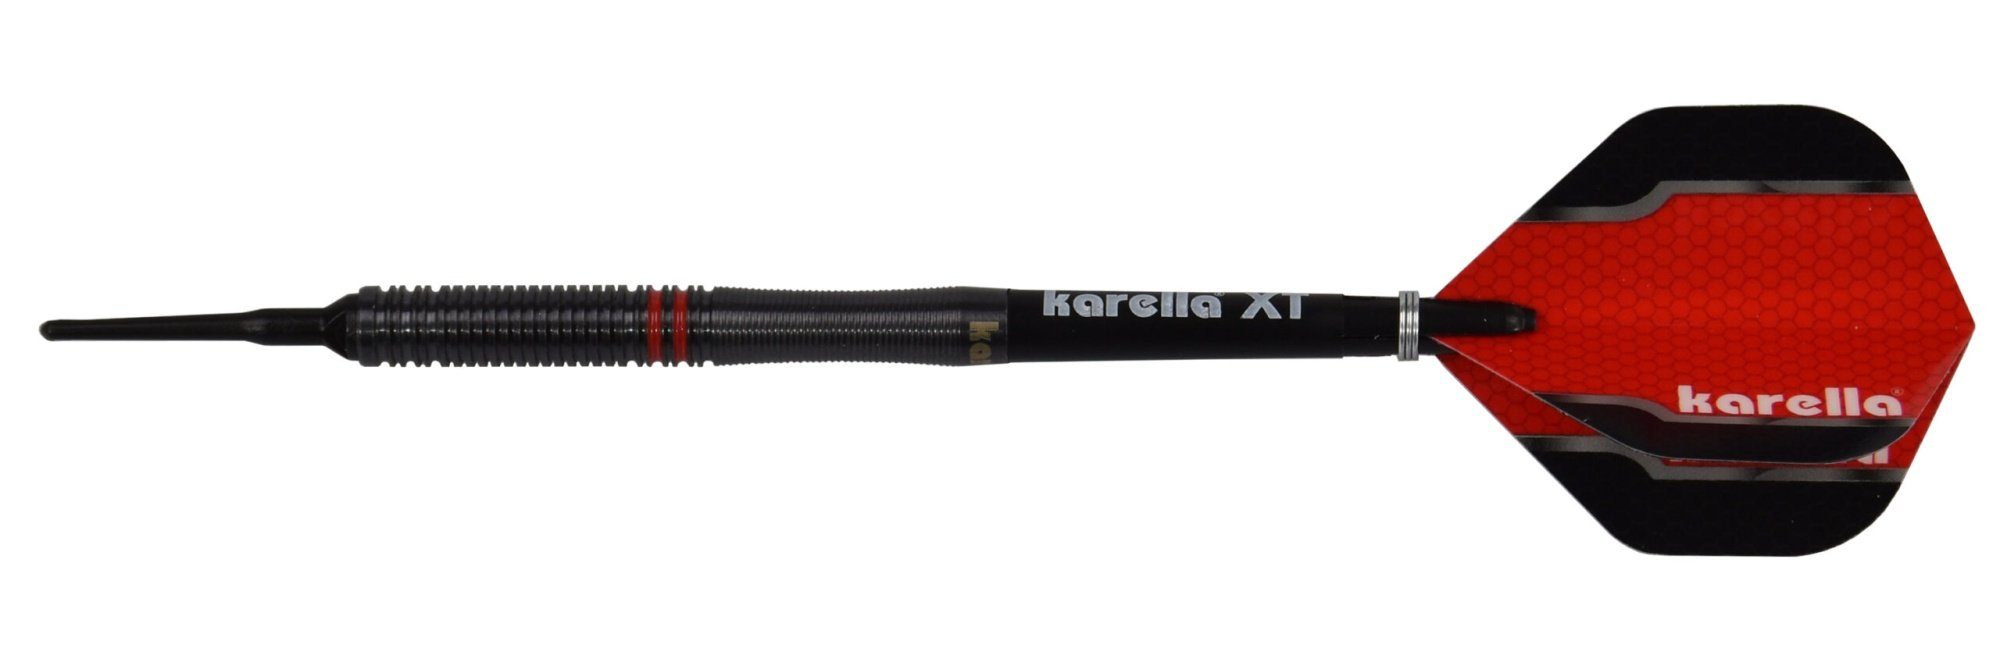 Karella Dartpfeil Softdart Fighter, 90% Tungsten, Karella oder 22g schwarz, 20g